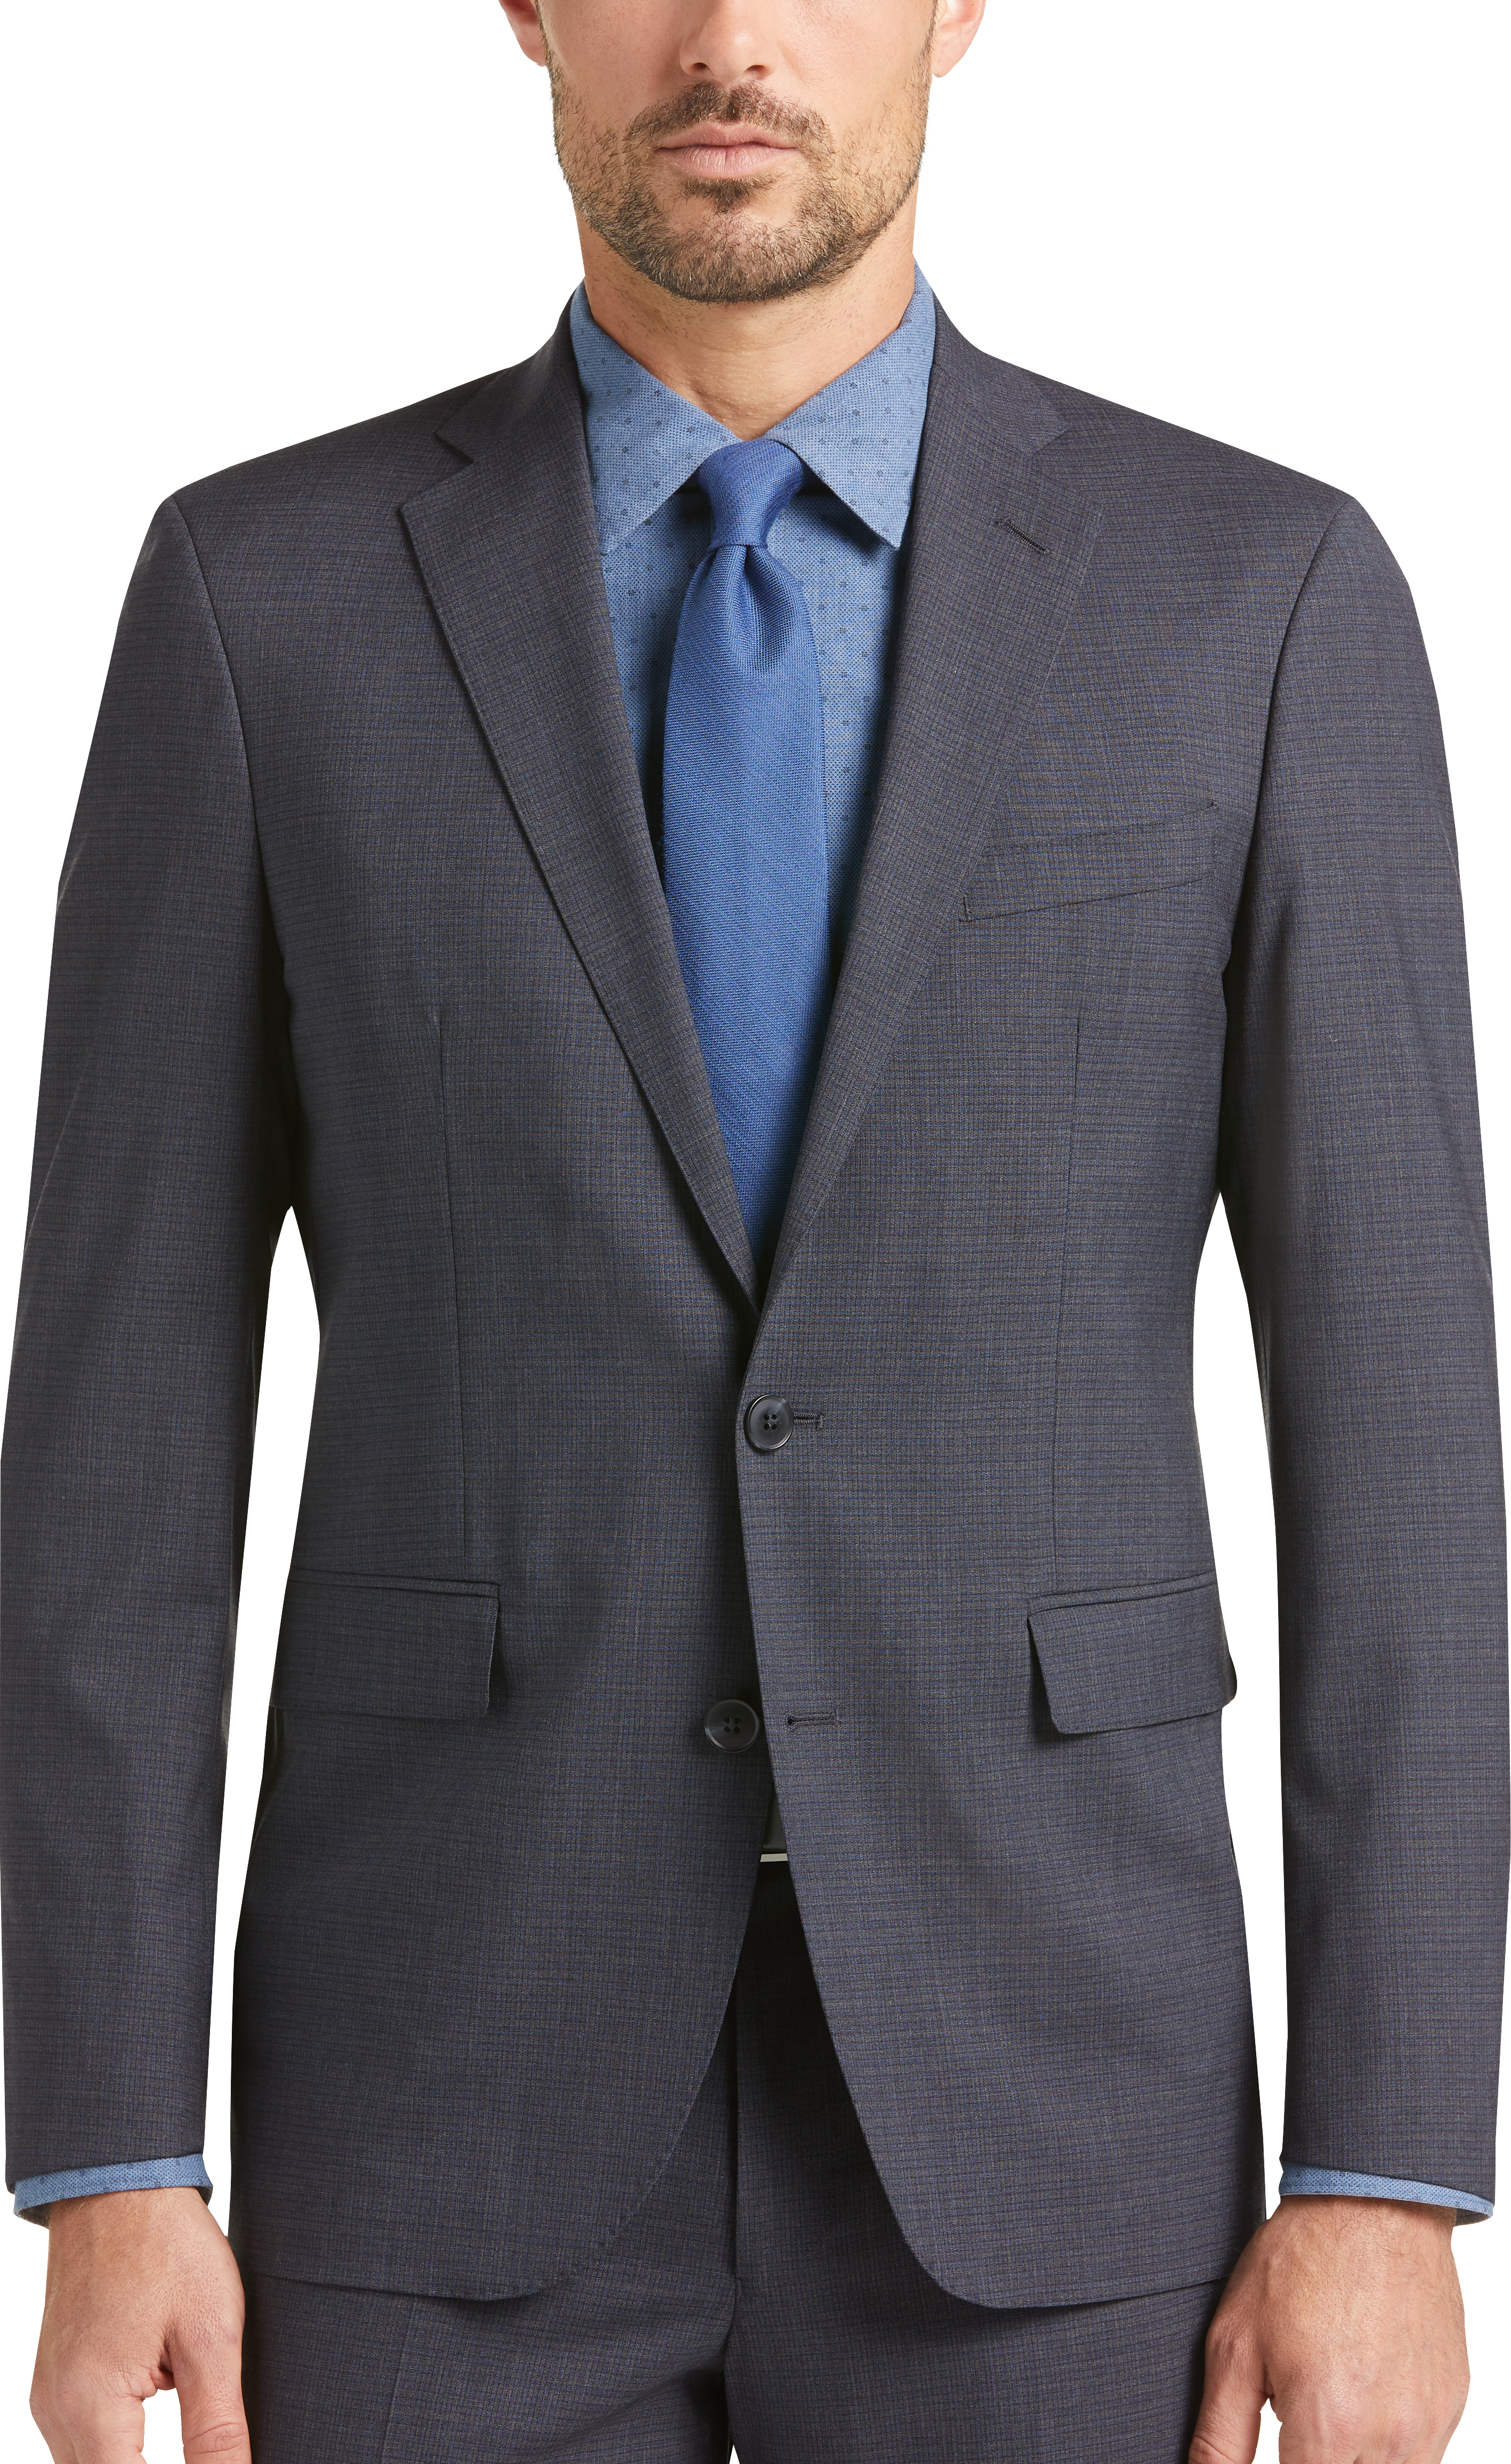 Cole Haan Grand.ØS Charcoal Check Coolmax Lined Slim Fit Suit - Men's ...